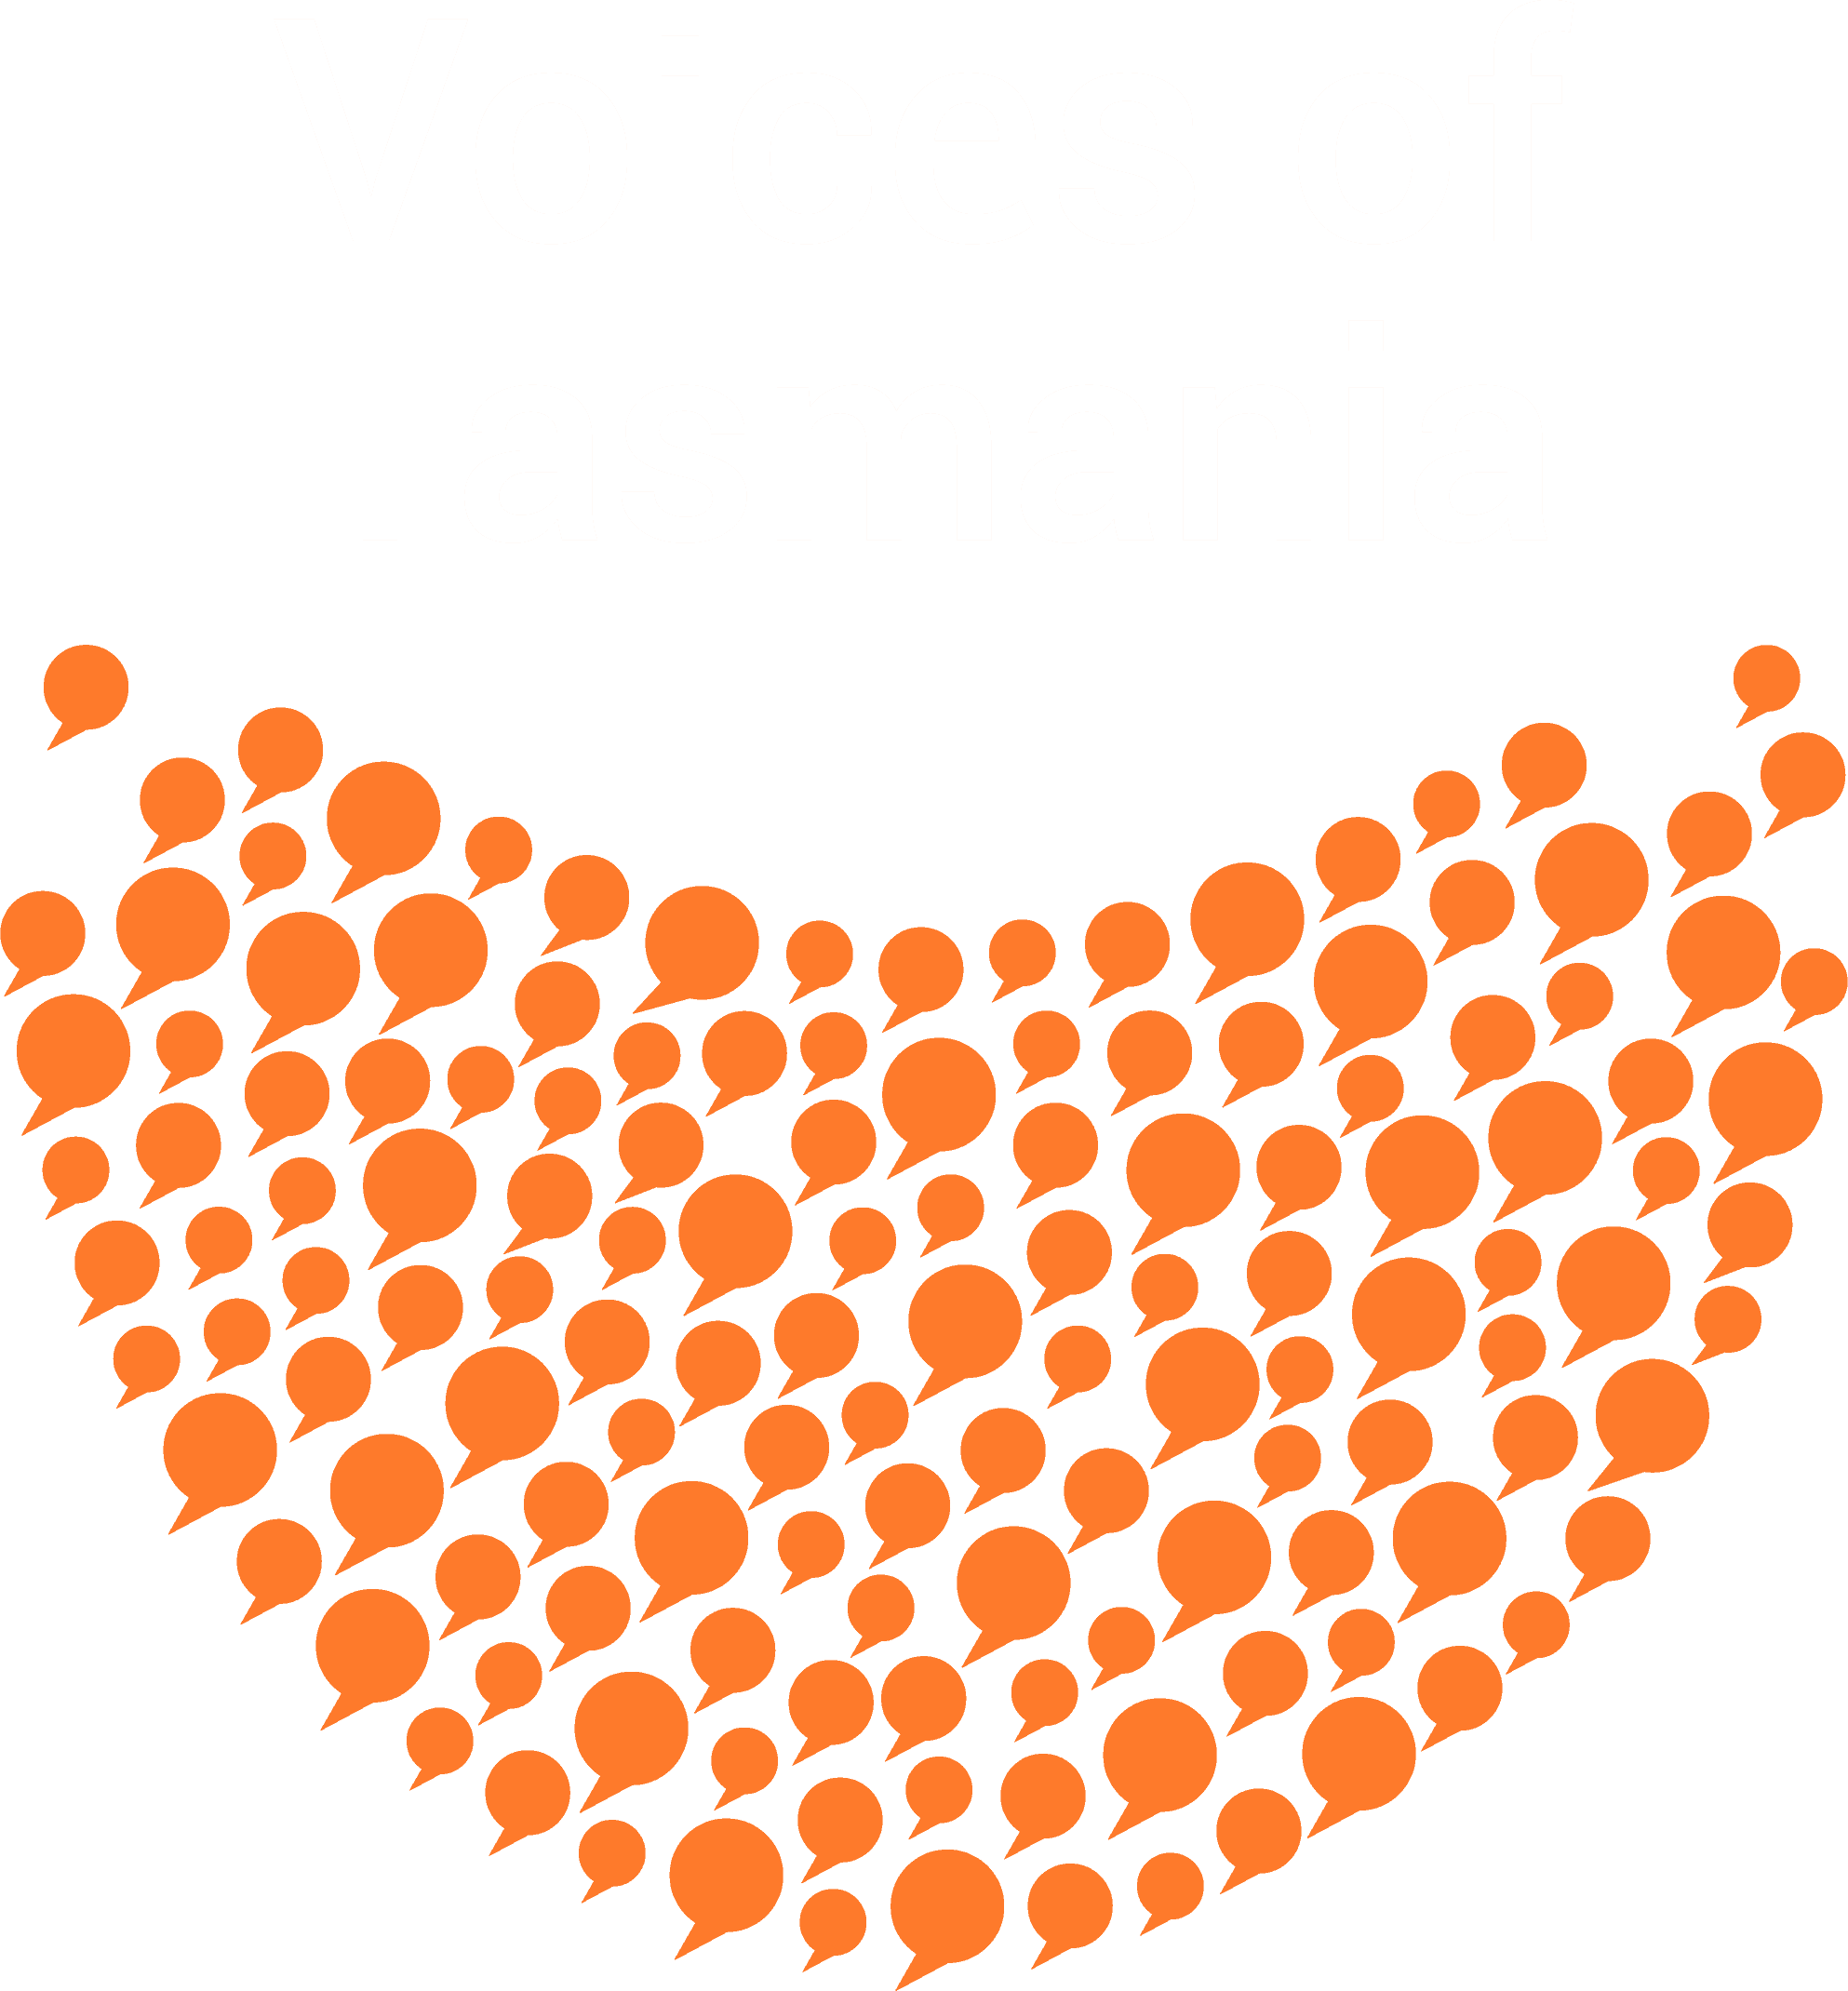 Voices of Tasmania Logo - white text